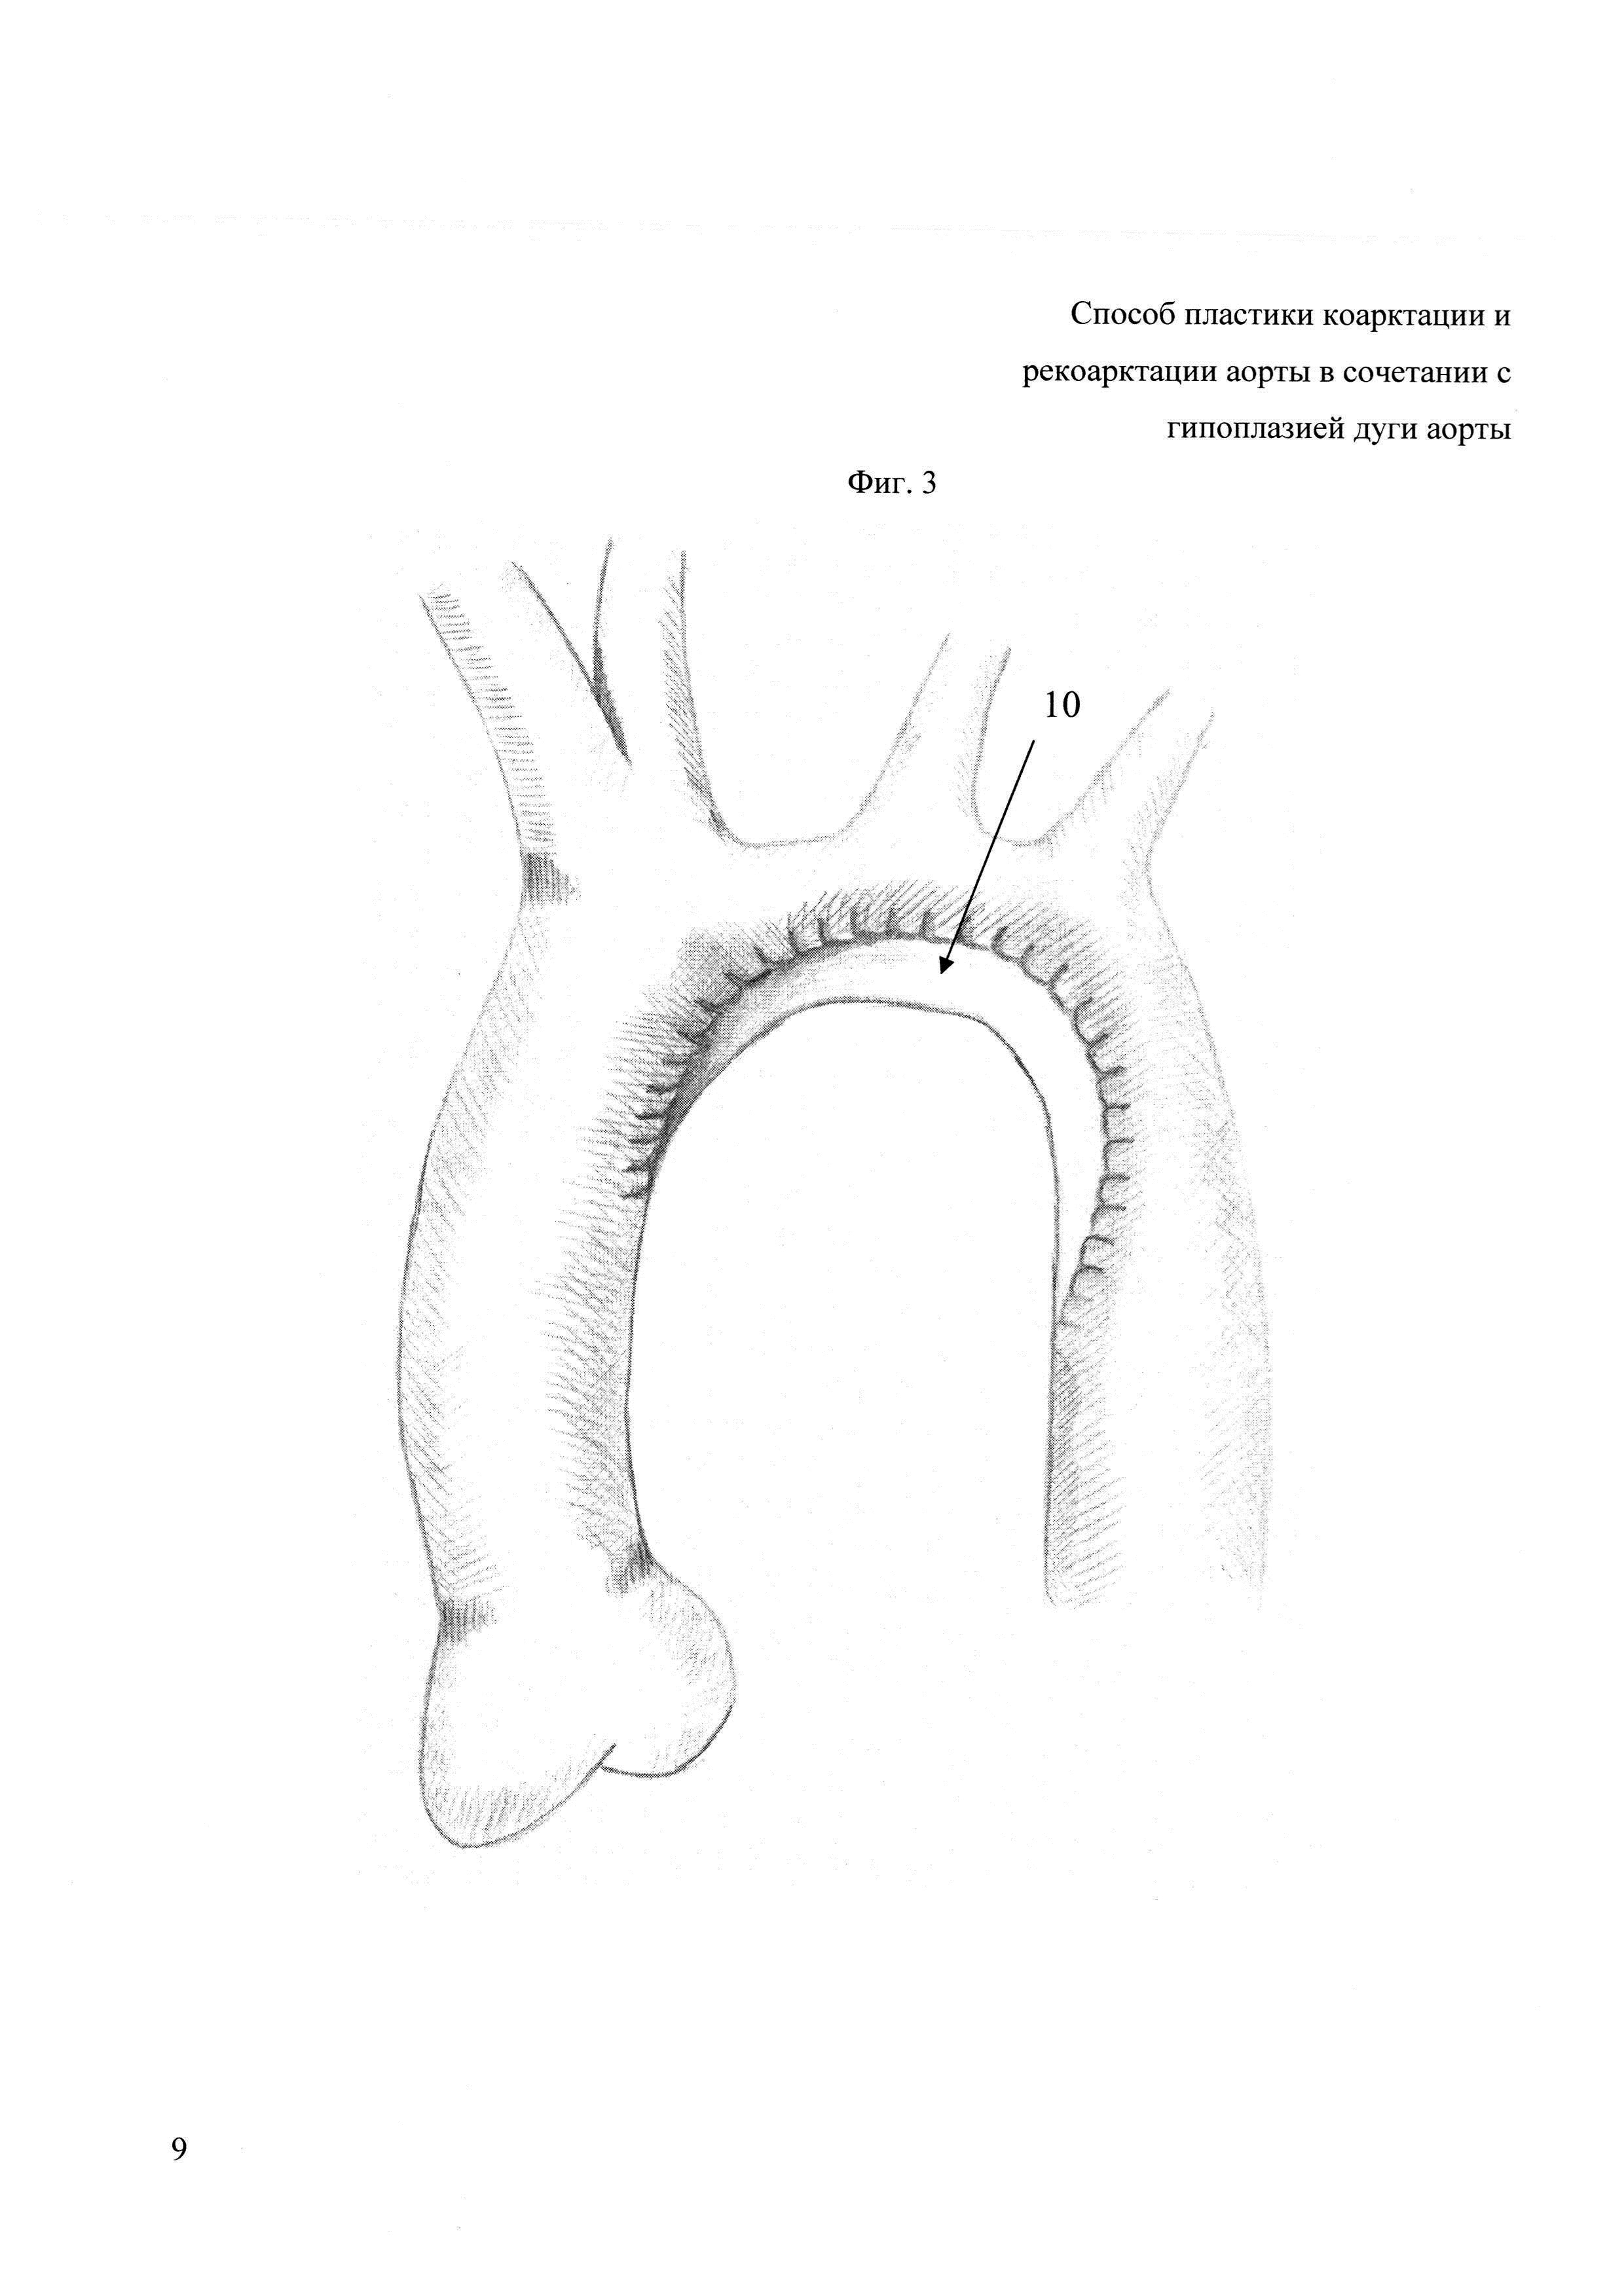 Способ пластики коарктации и рекоарктации аорты в сочетании с гипоплазией дуги аорты